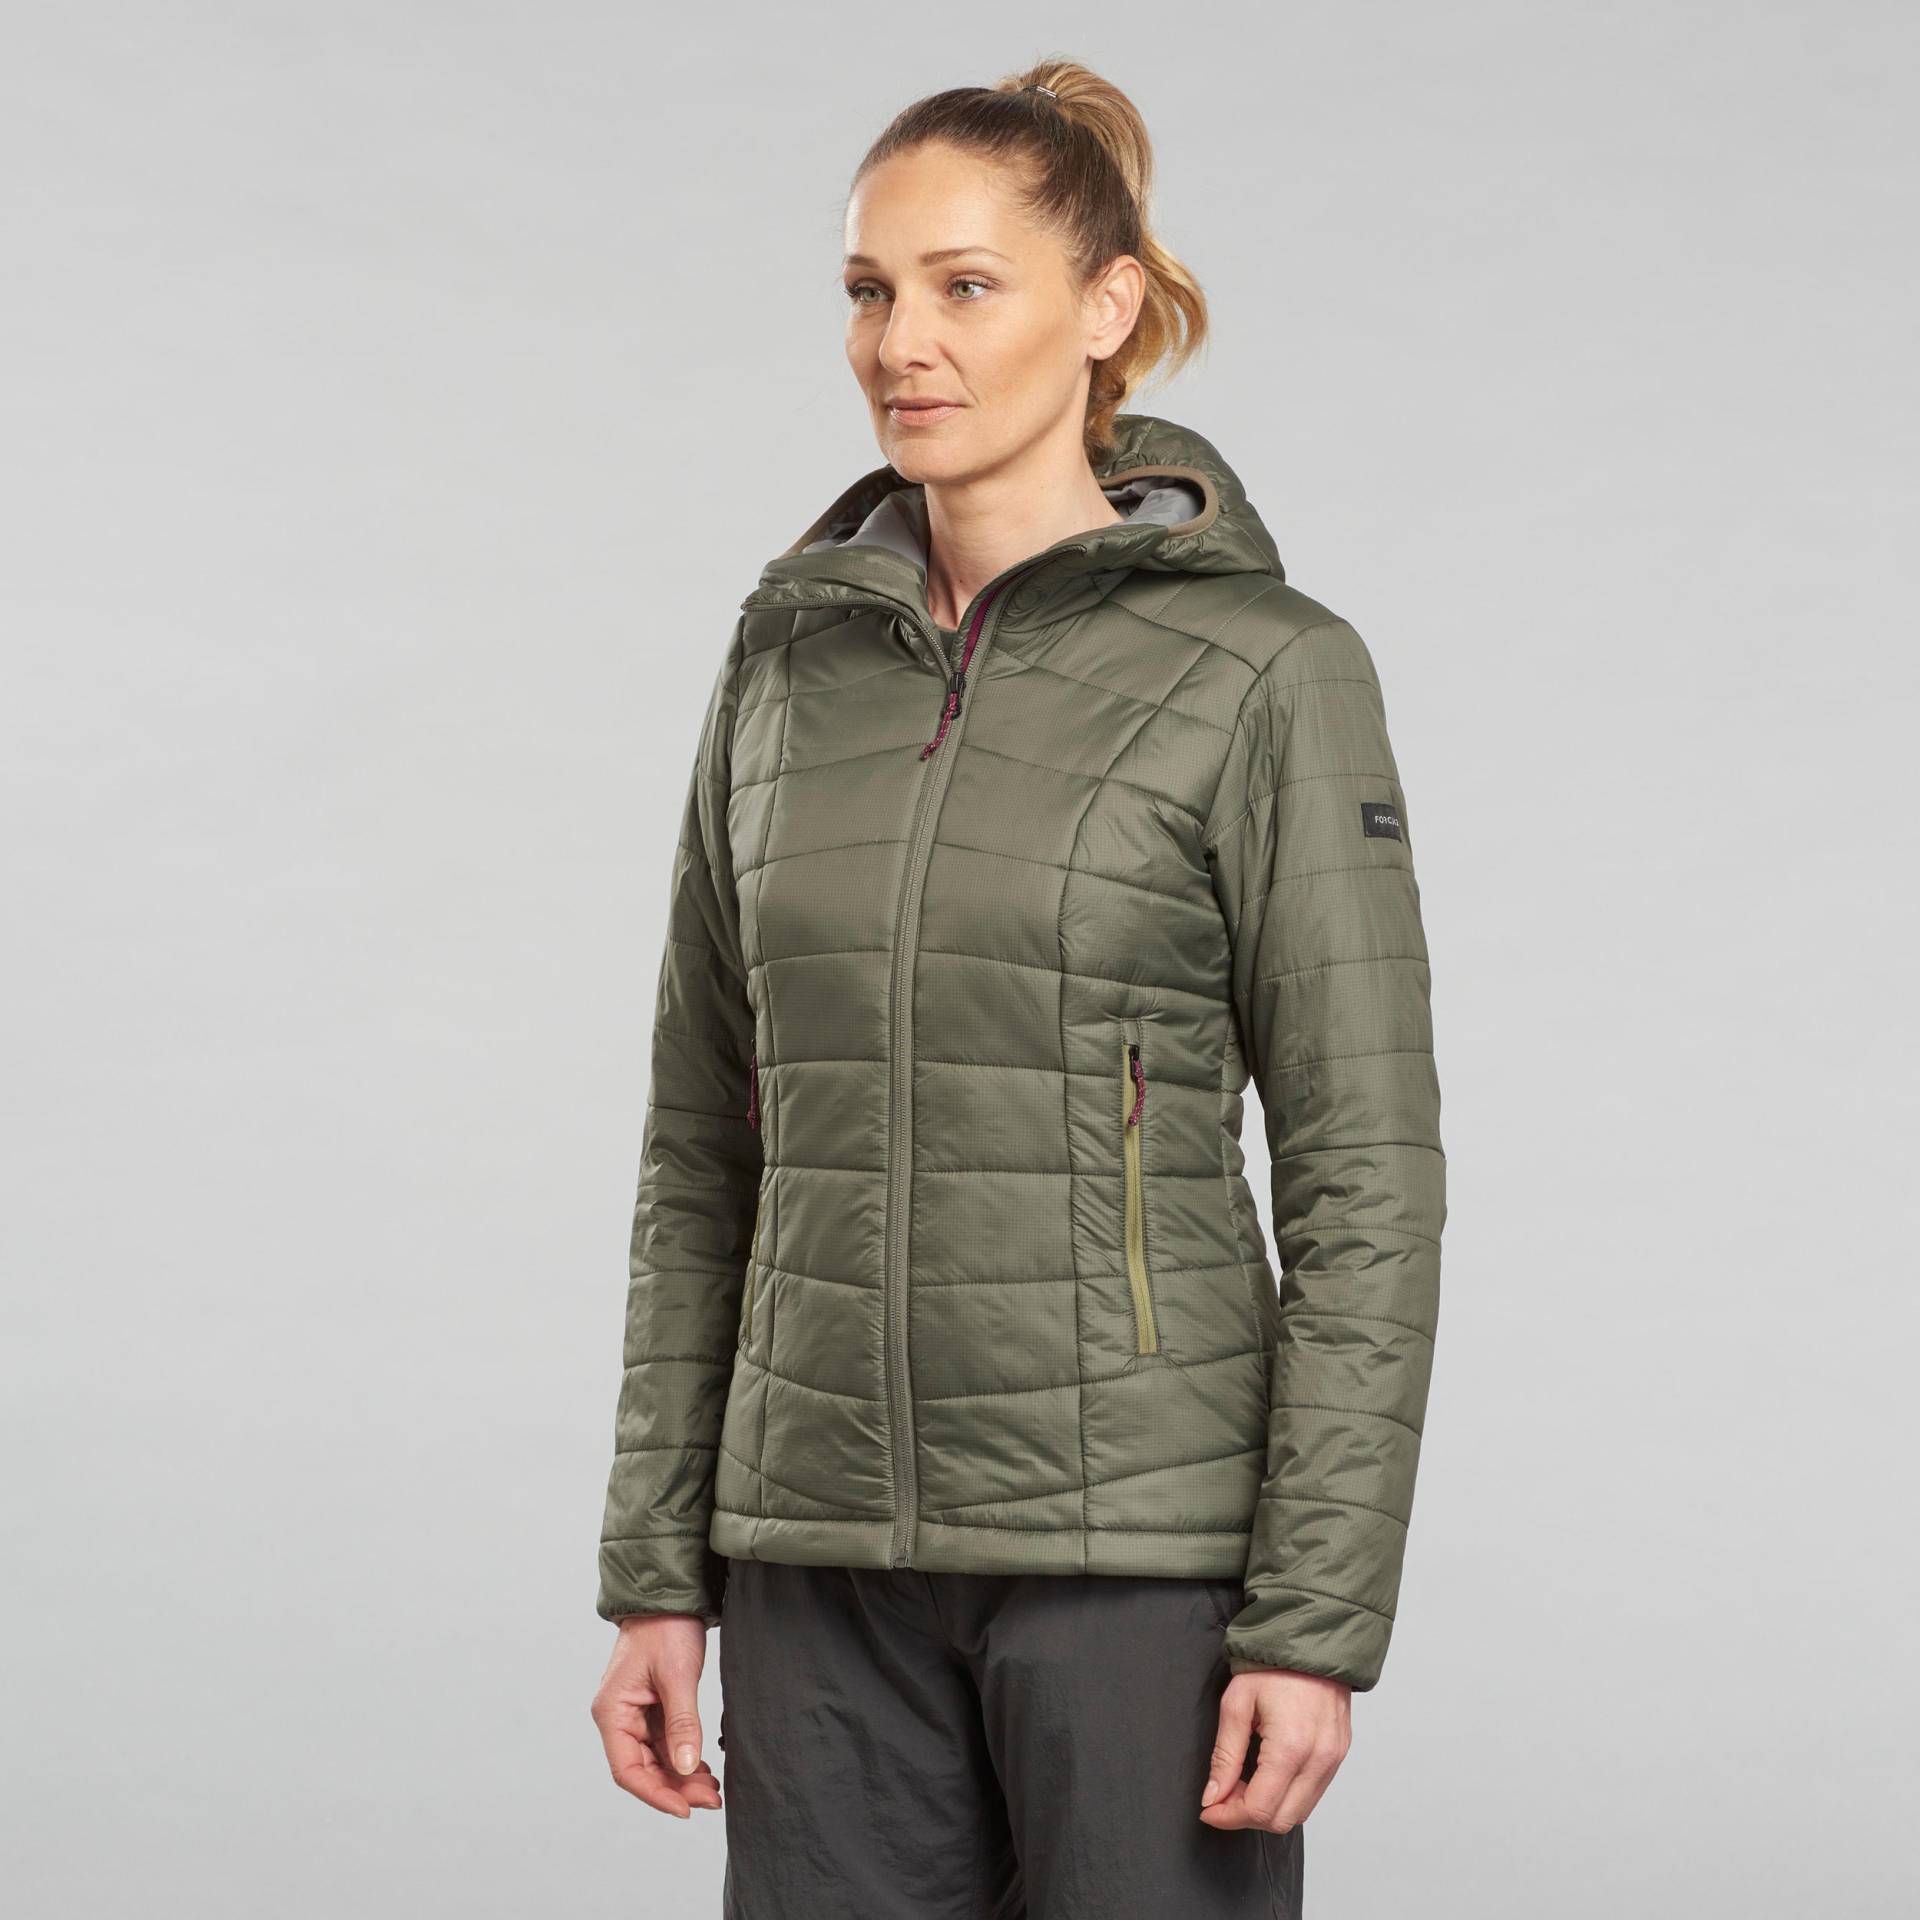 Wattierte Jacke Damen bis -5 °C Trekking - MT100 khaki von FORCLAZ